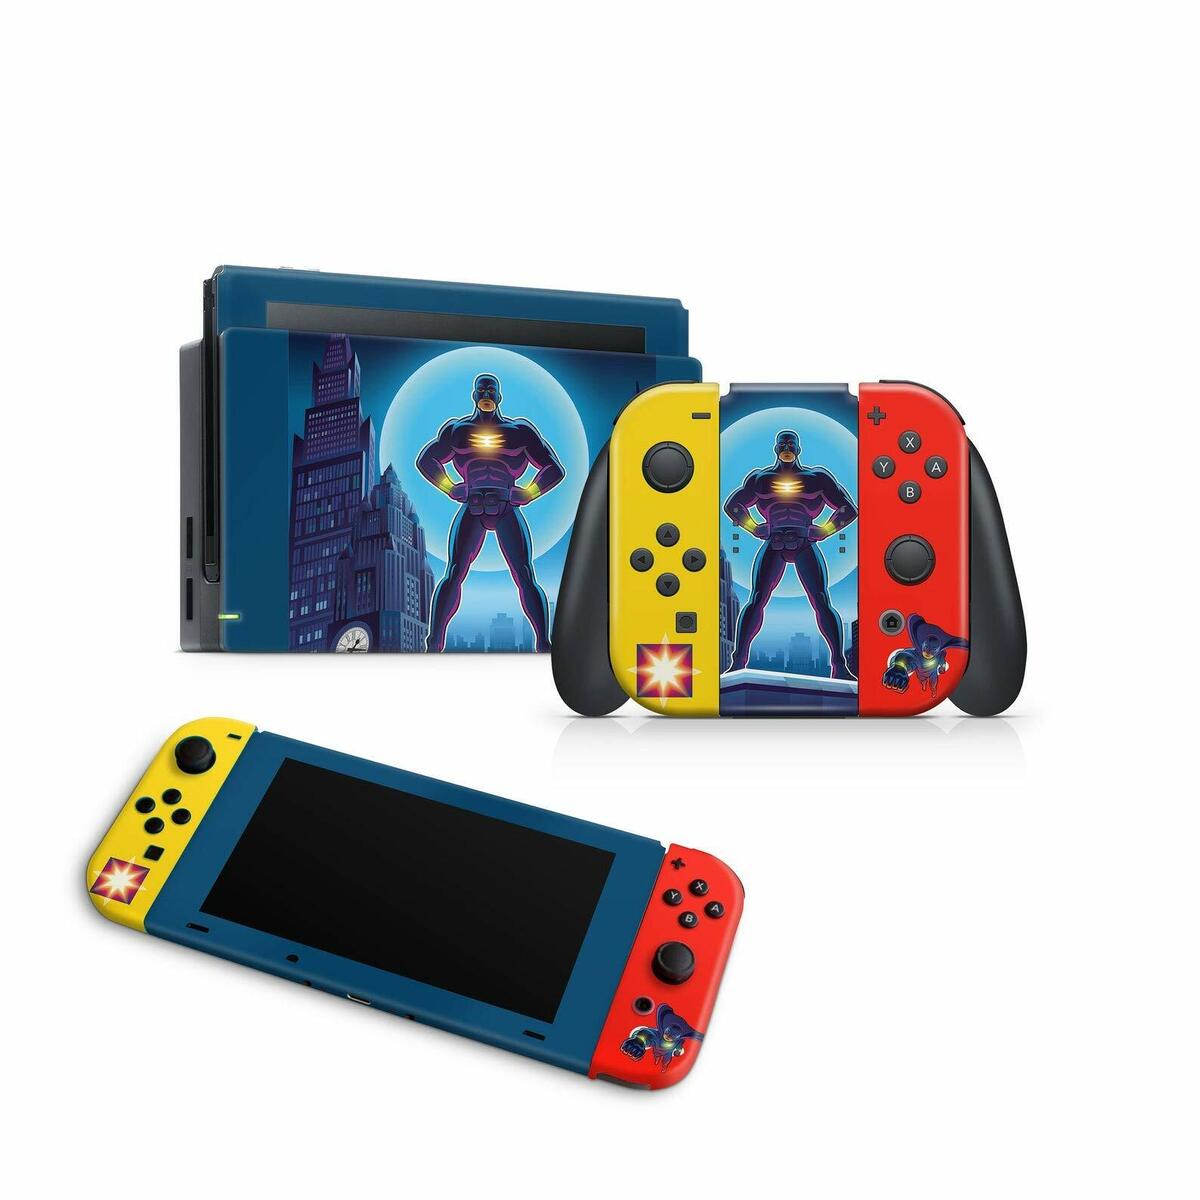 Nøjagtighed jeg er sulten Kriminel Nintendo Switch Skin Decal Sticker 3M Red Steel Lite Blue Comic Book Hero |  eBay